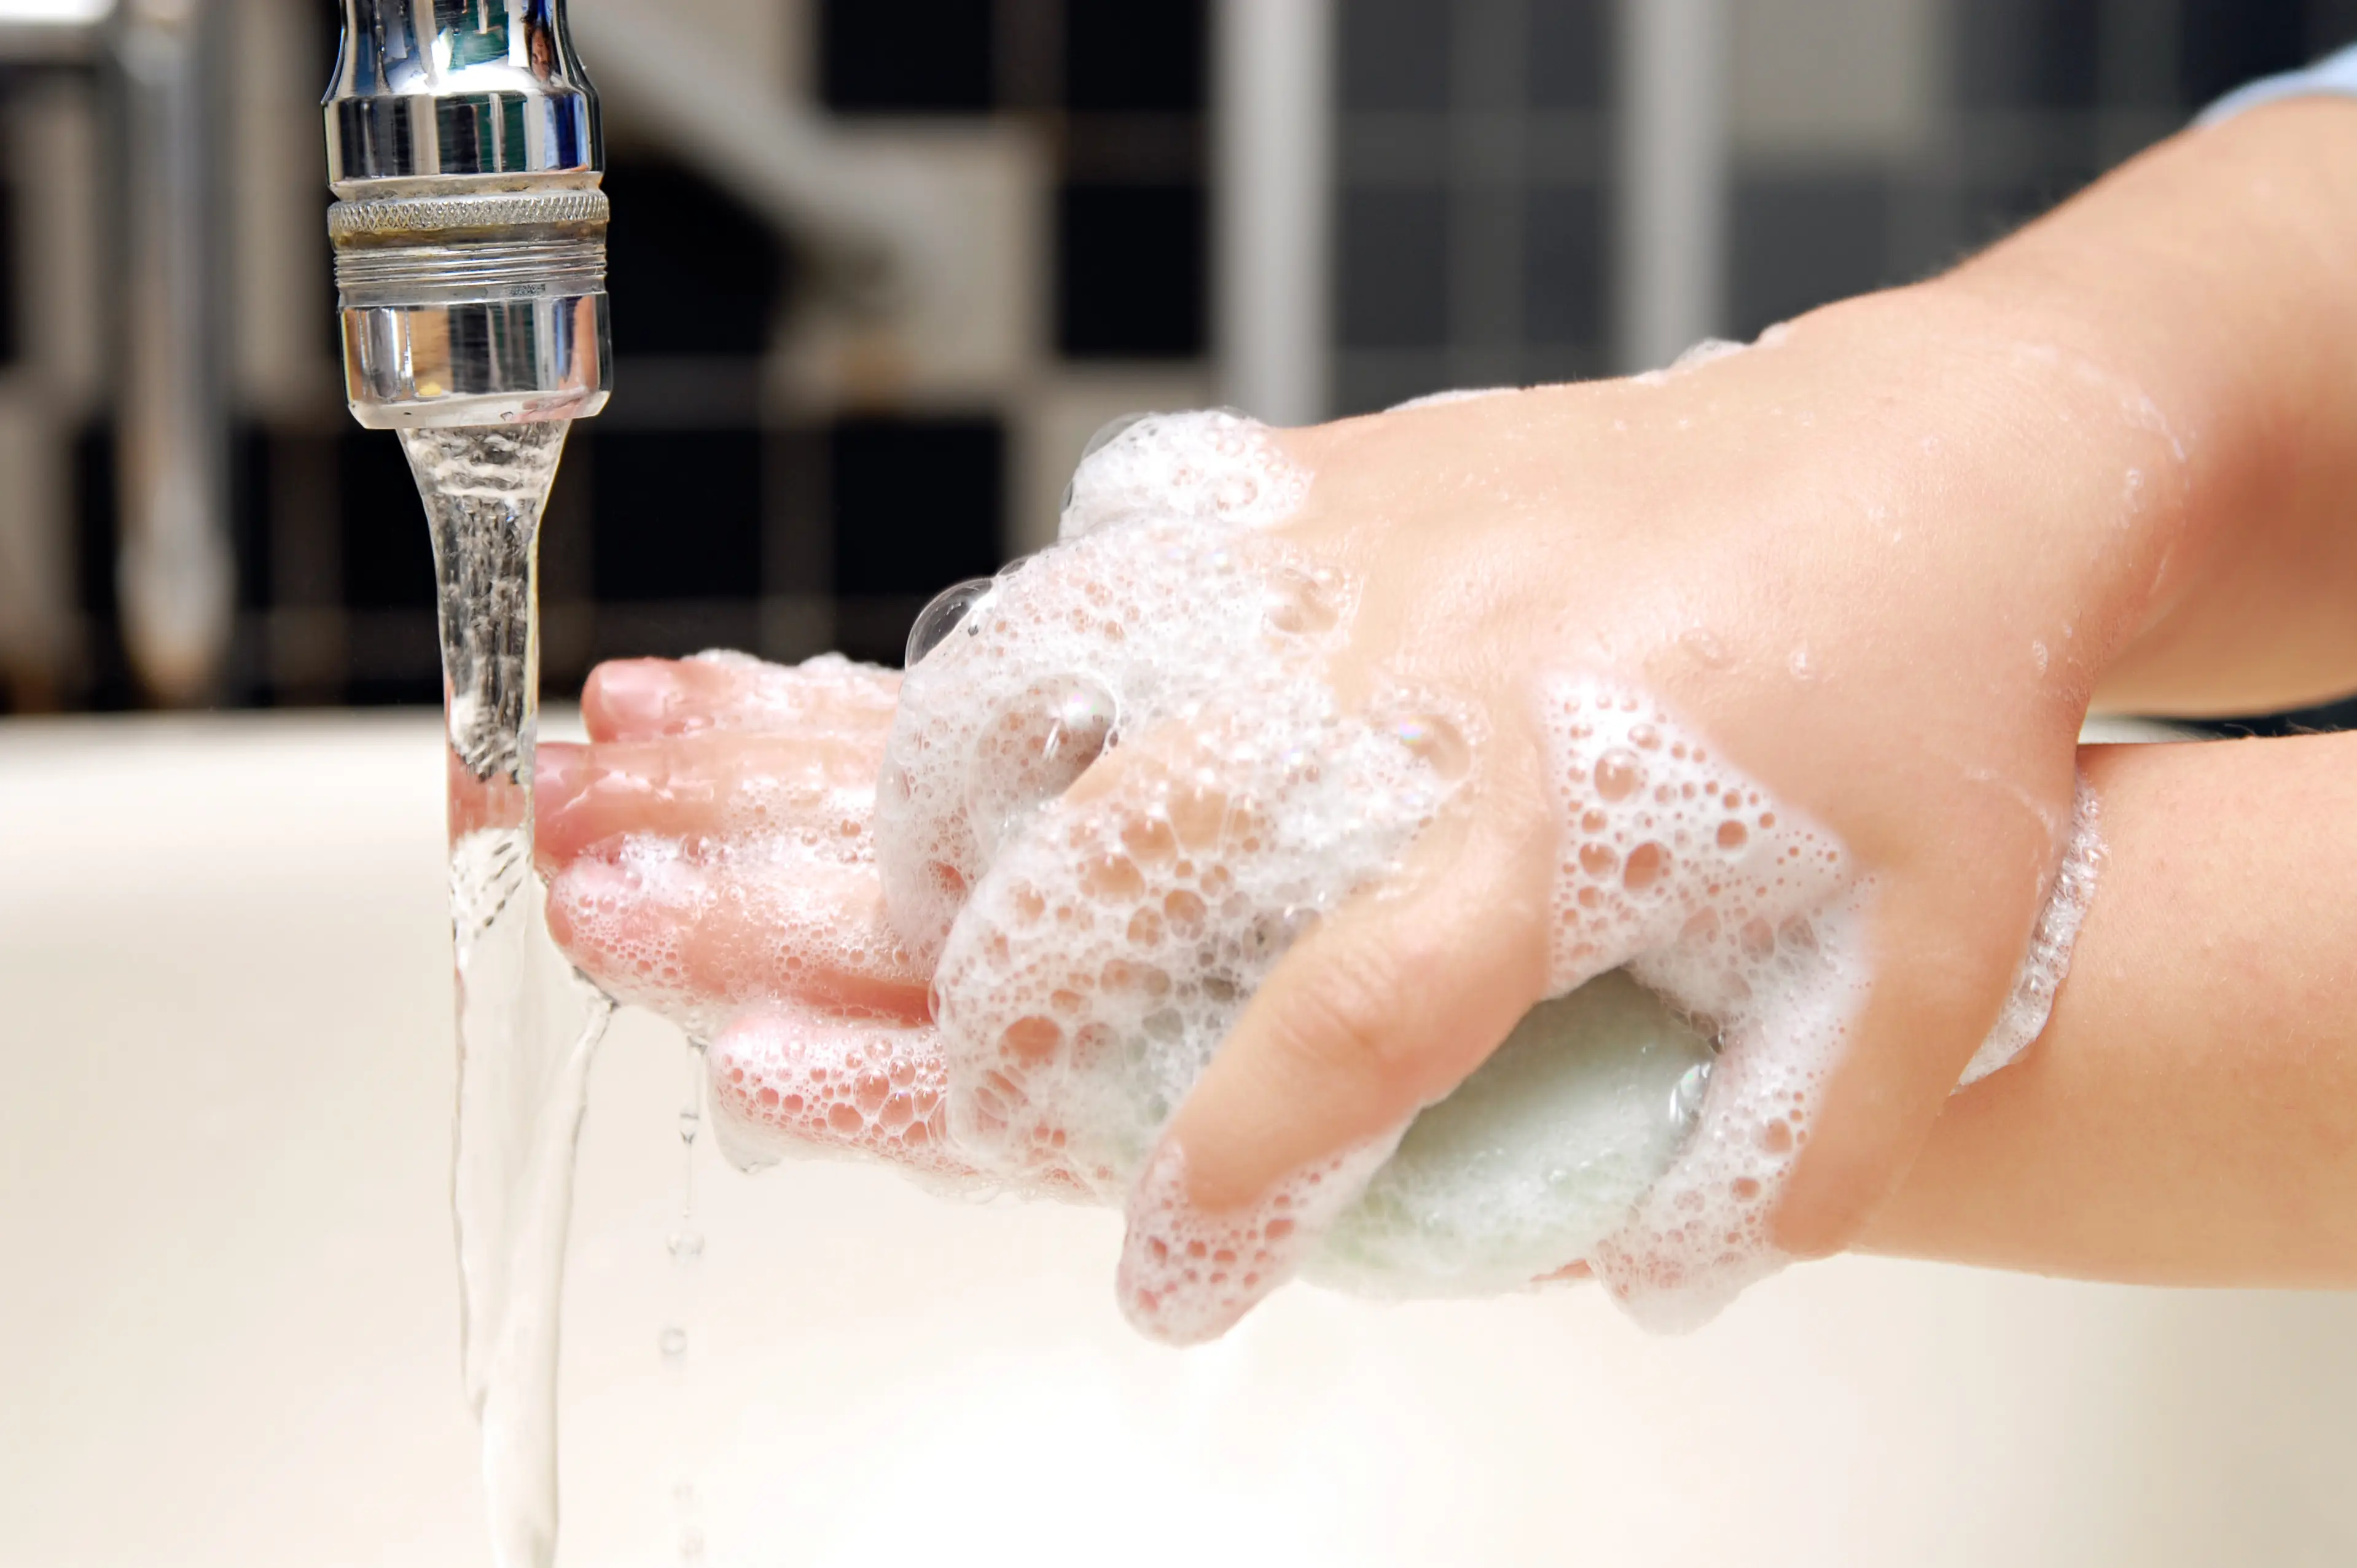 https://www.lysol.com/content/dam/lysol-us/article-detail-pages/child-handwash-soapblock.jpg